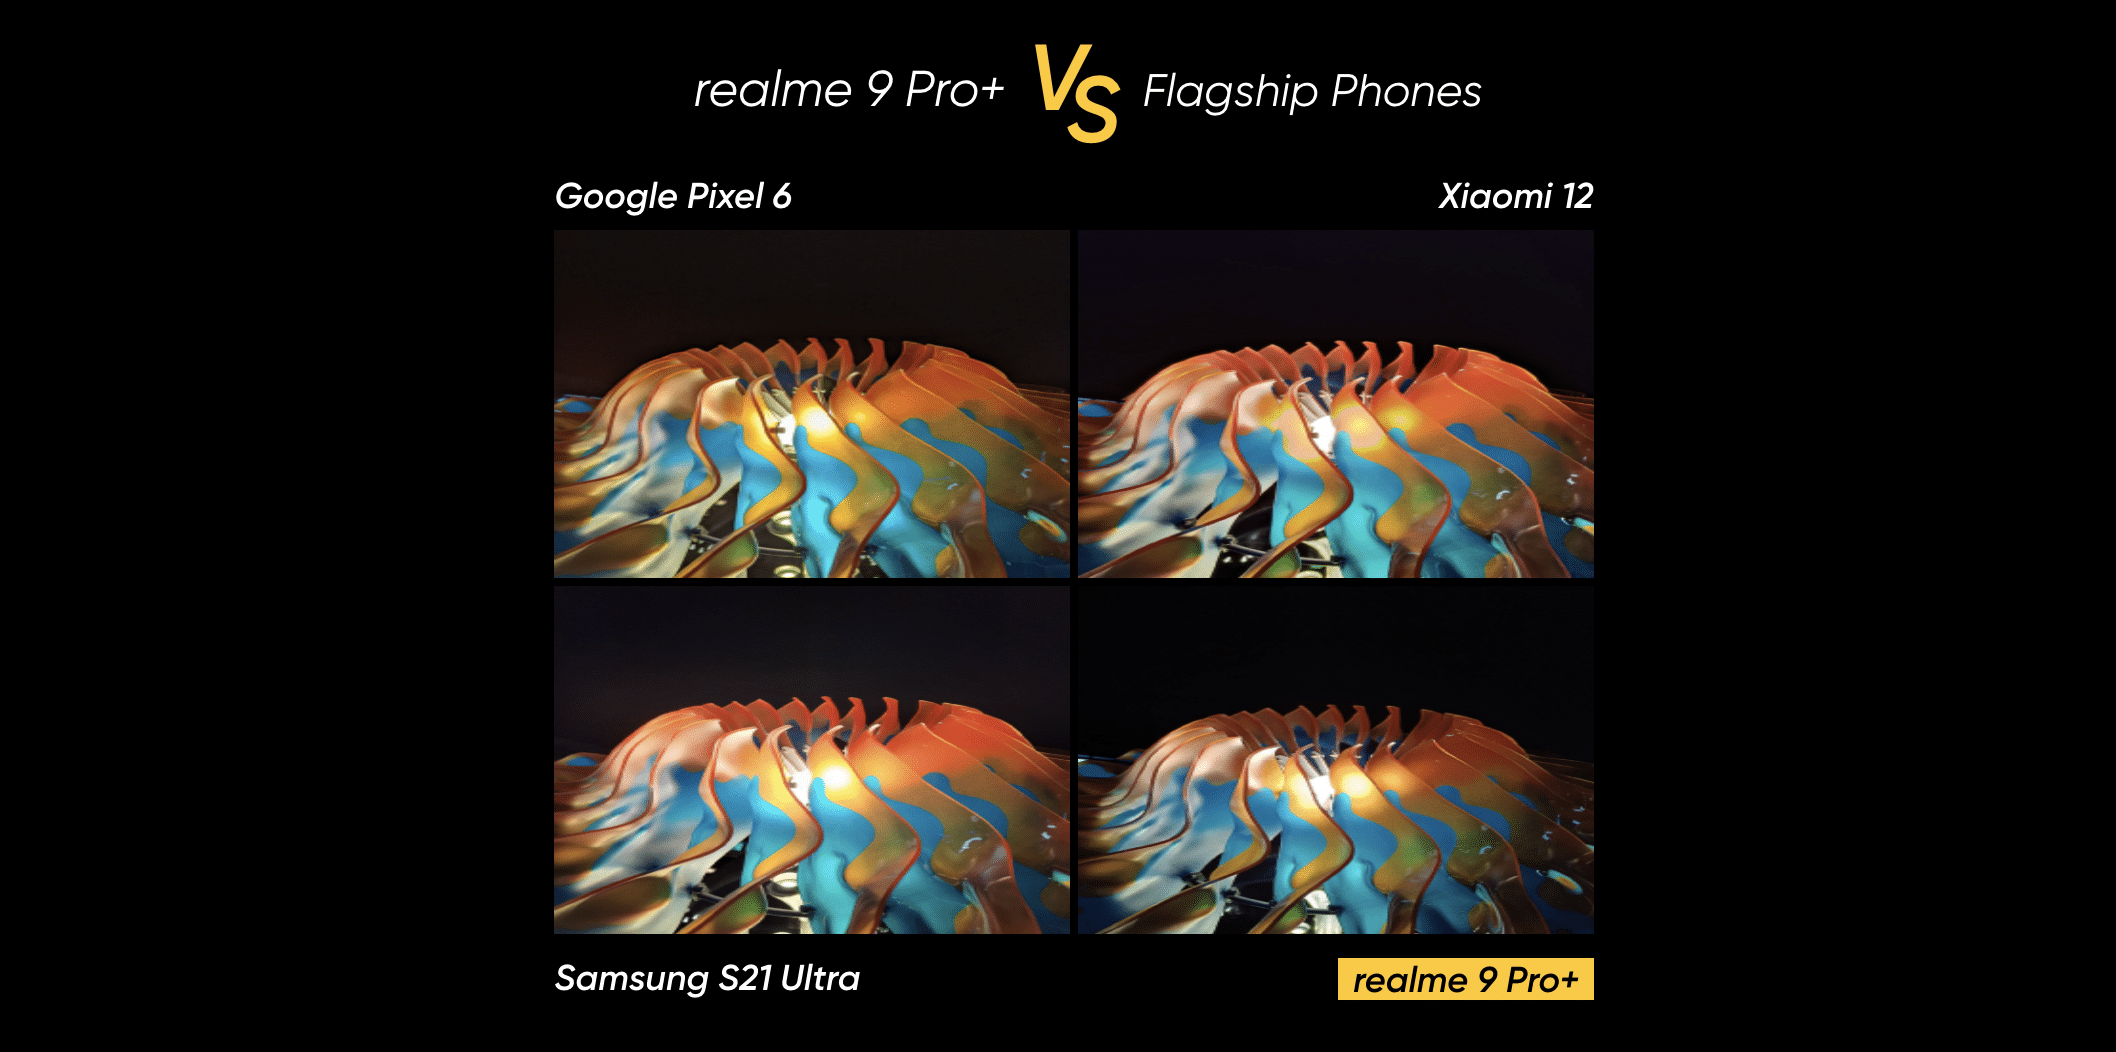 เรียลมี เผยภาพถ่ายเปรียบเทียบ realme 9 Pro+ กับ Android แฟล็กชิปอย่าง Google Pixel 6, Xioami 12 และ Samsung Galaxy S21 Ultra